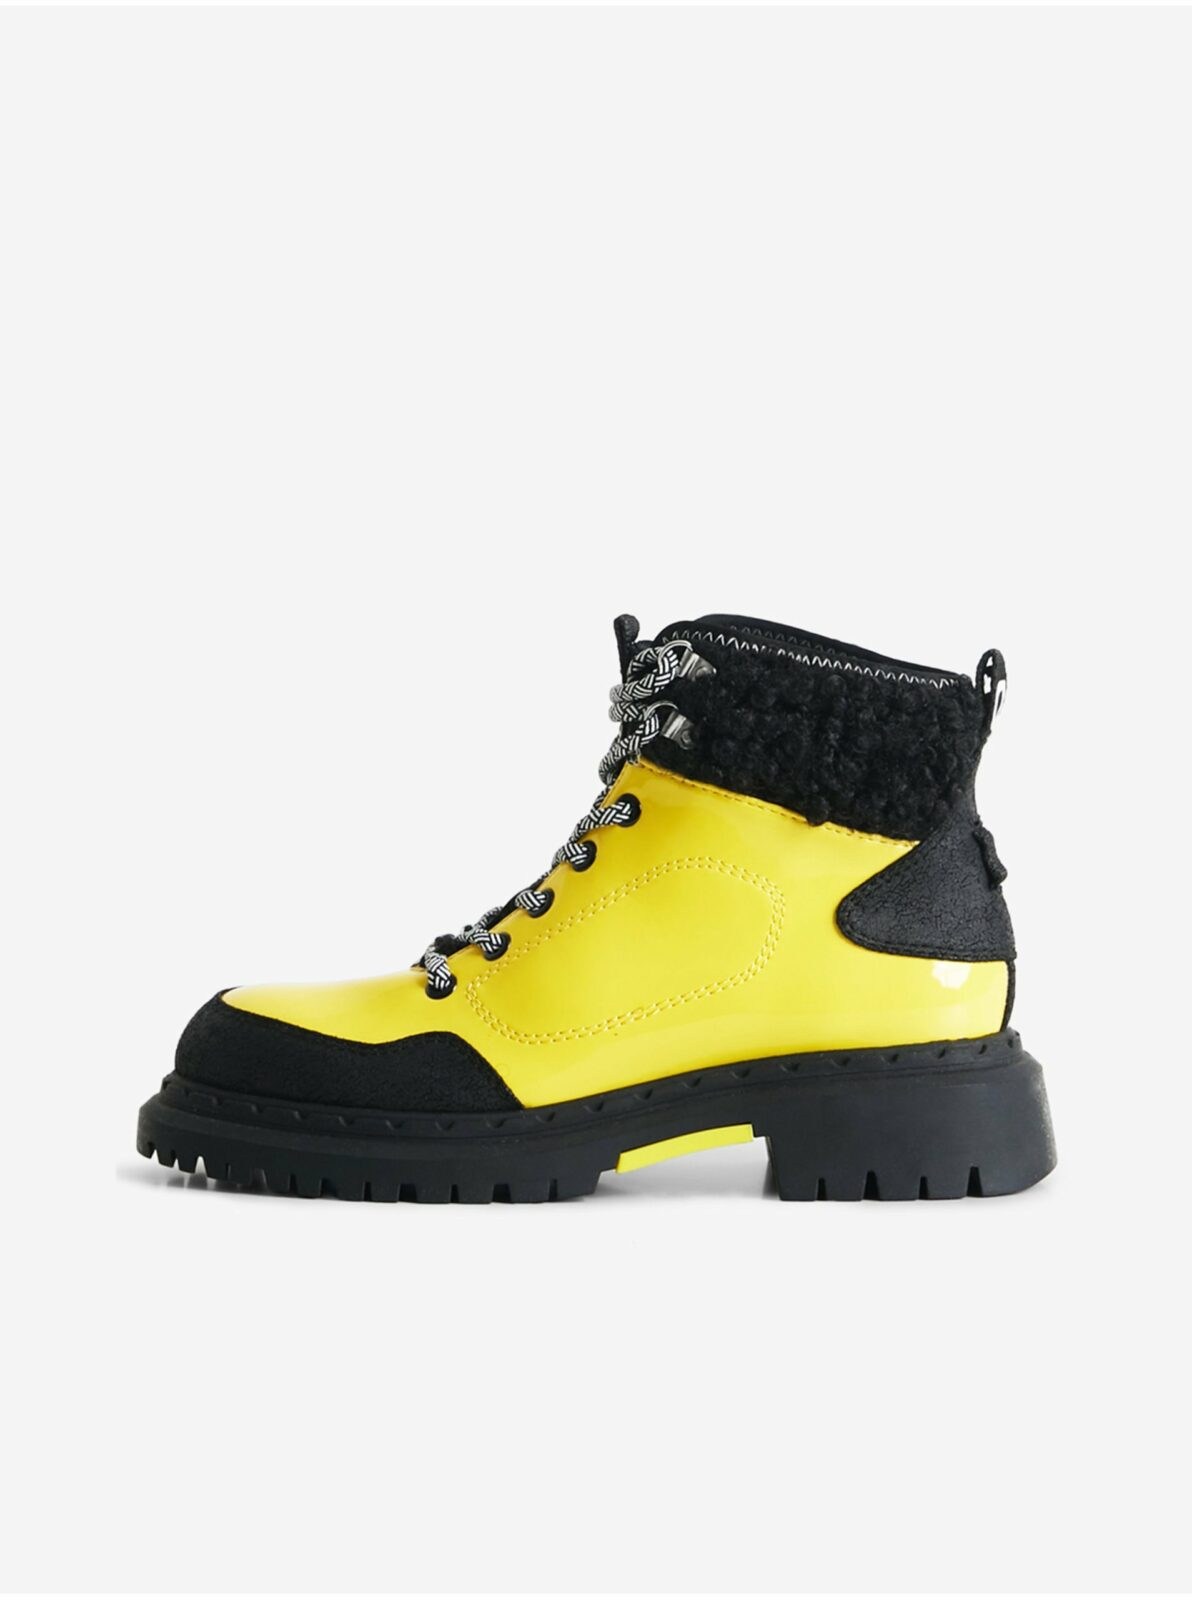 Černo-žluté dámské kotníkové boty Desigual Trekking